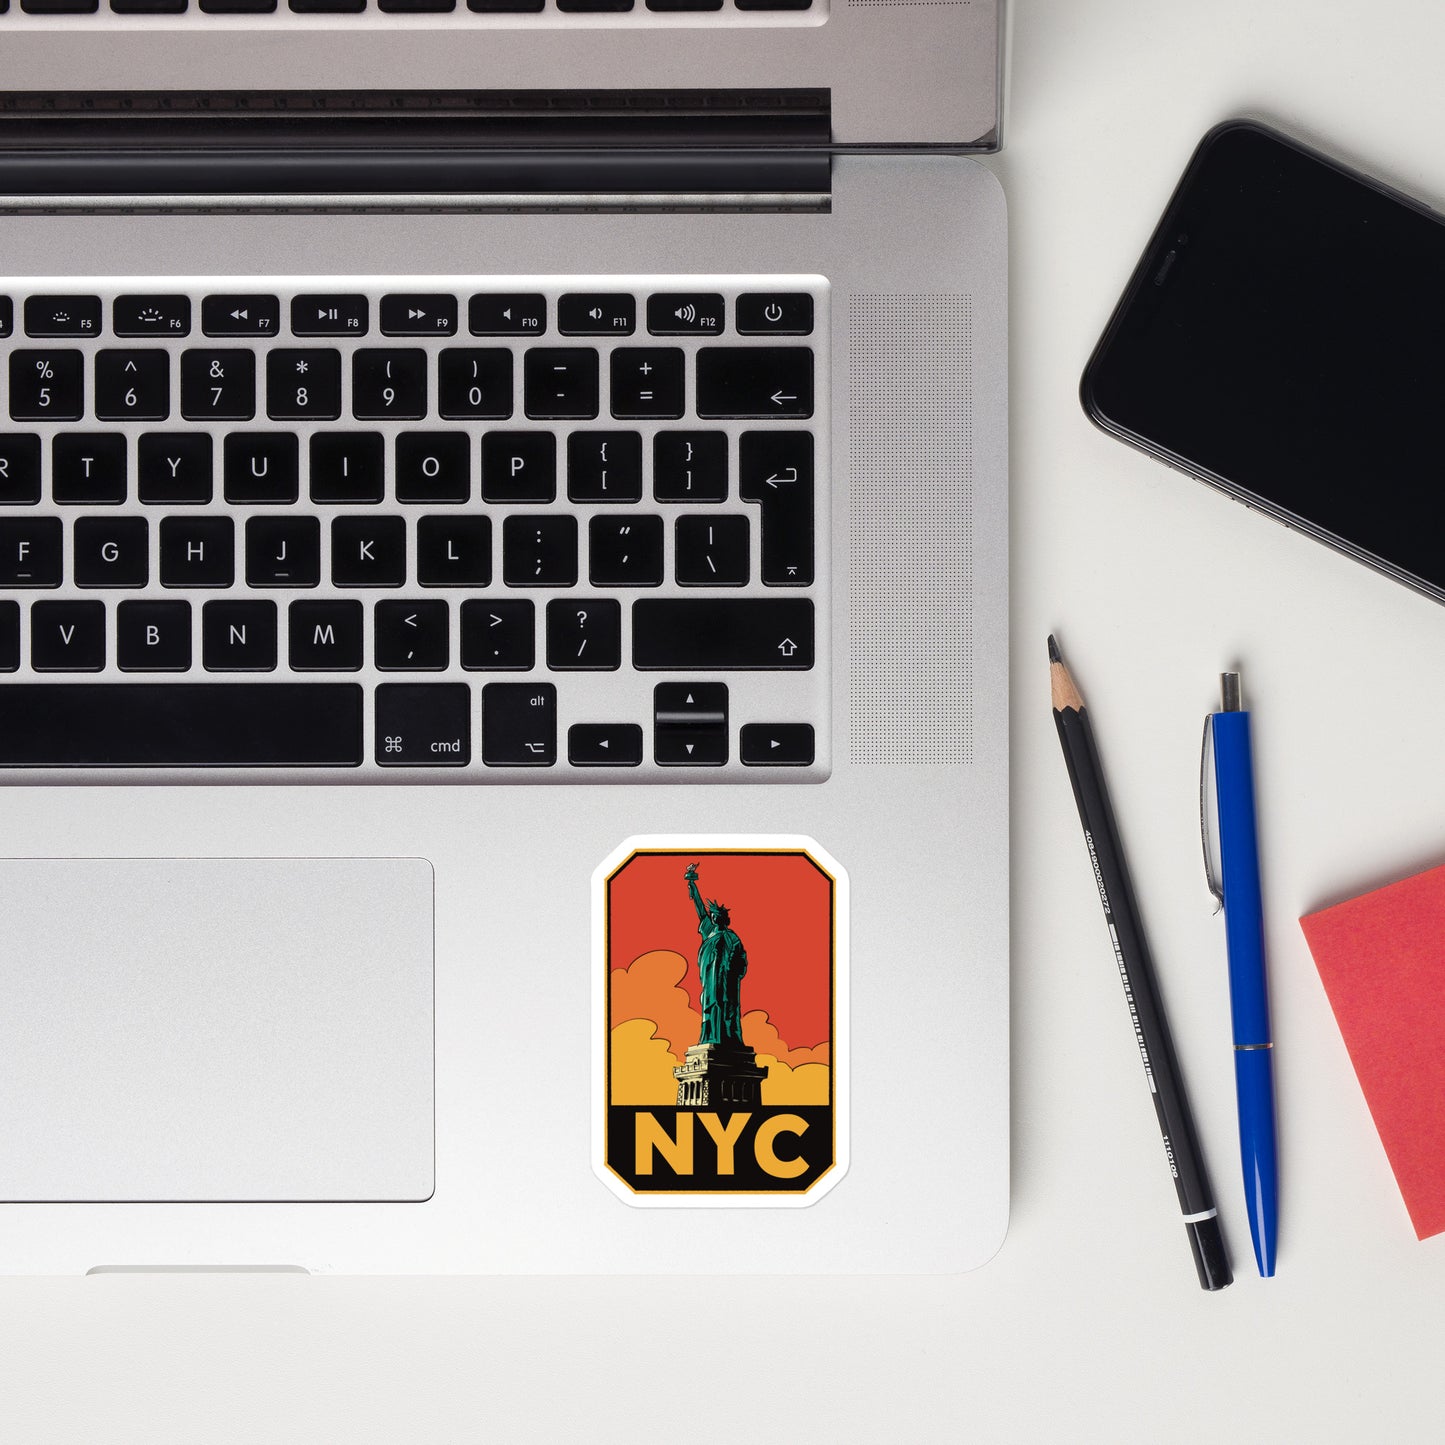 A sticker of New York City on a laptop